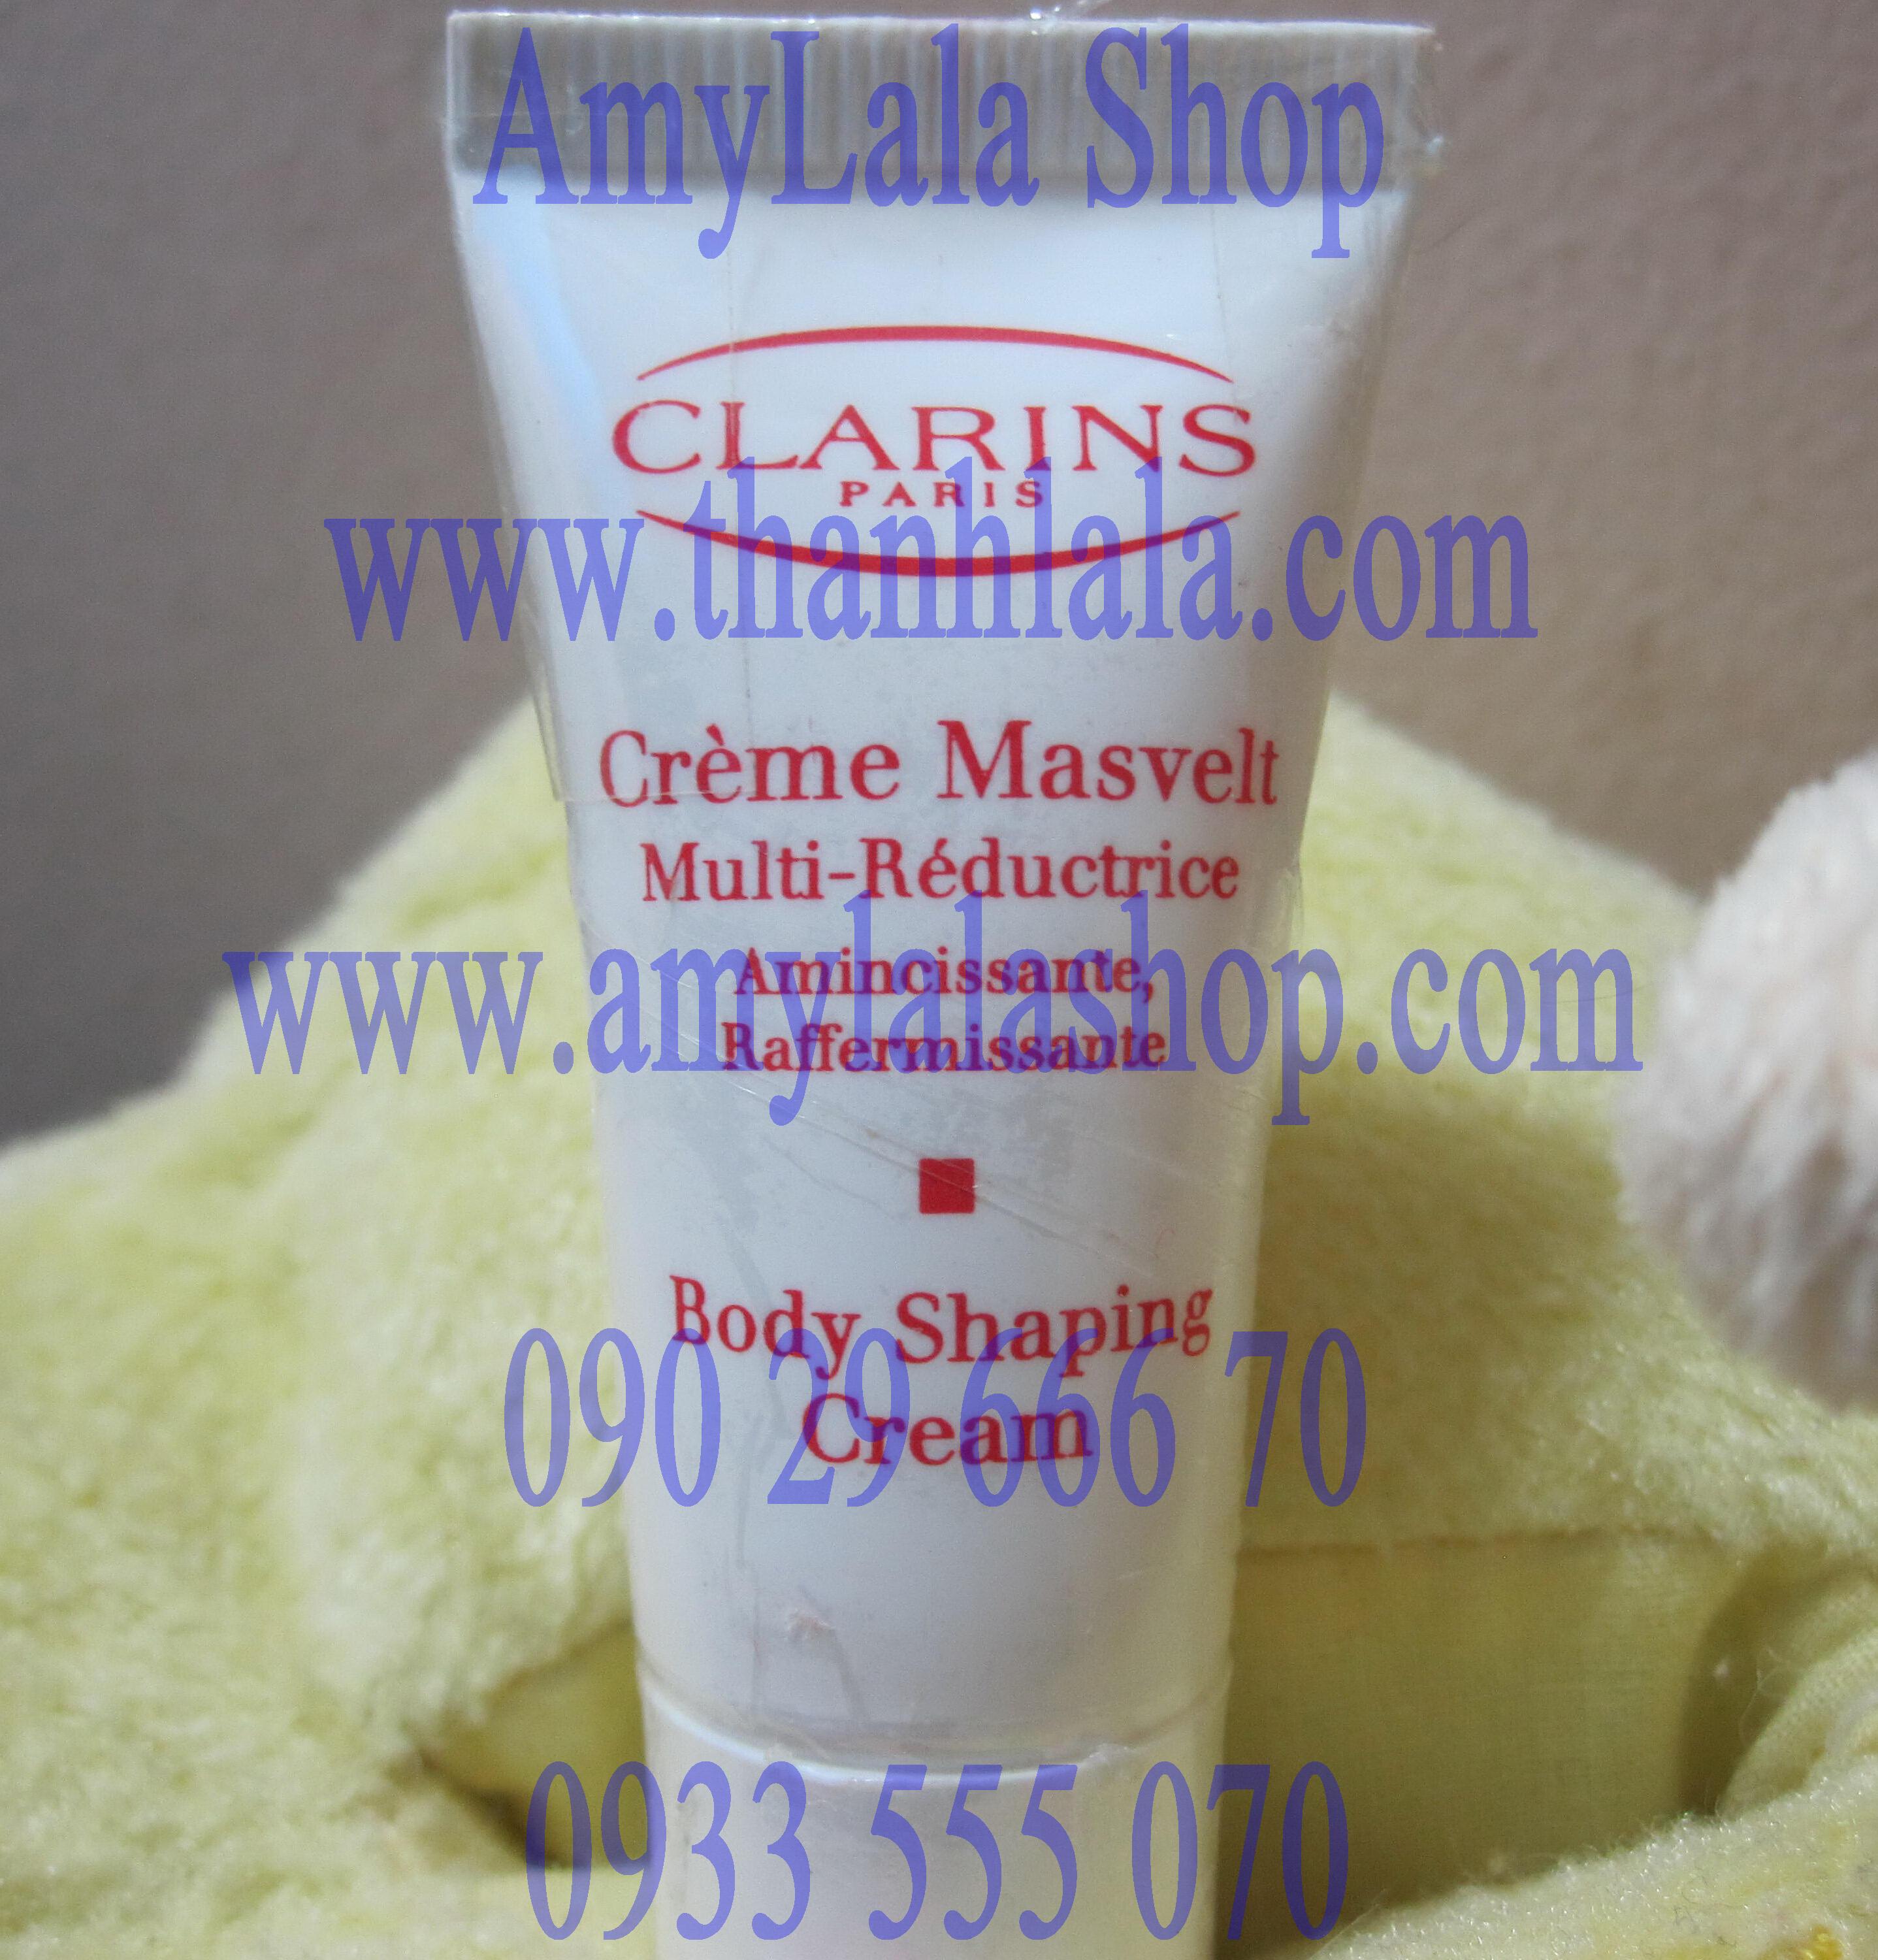 Kem dưỡng trắng da toàn thân Clarins Body Shaping Cream 8ml - 0933555070 - 0902966670